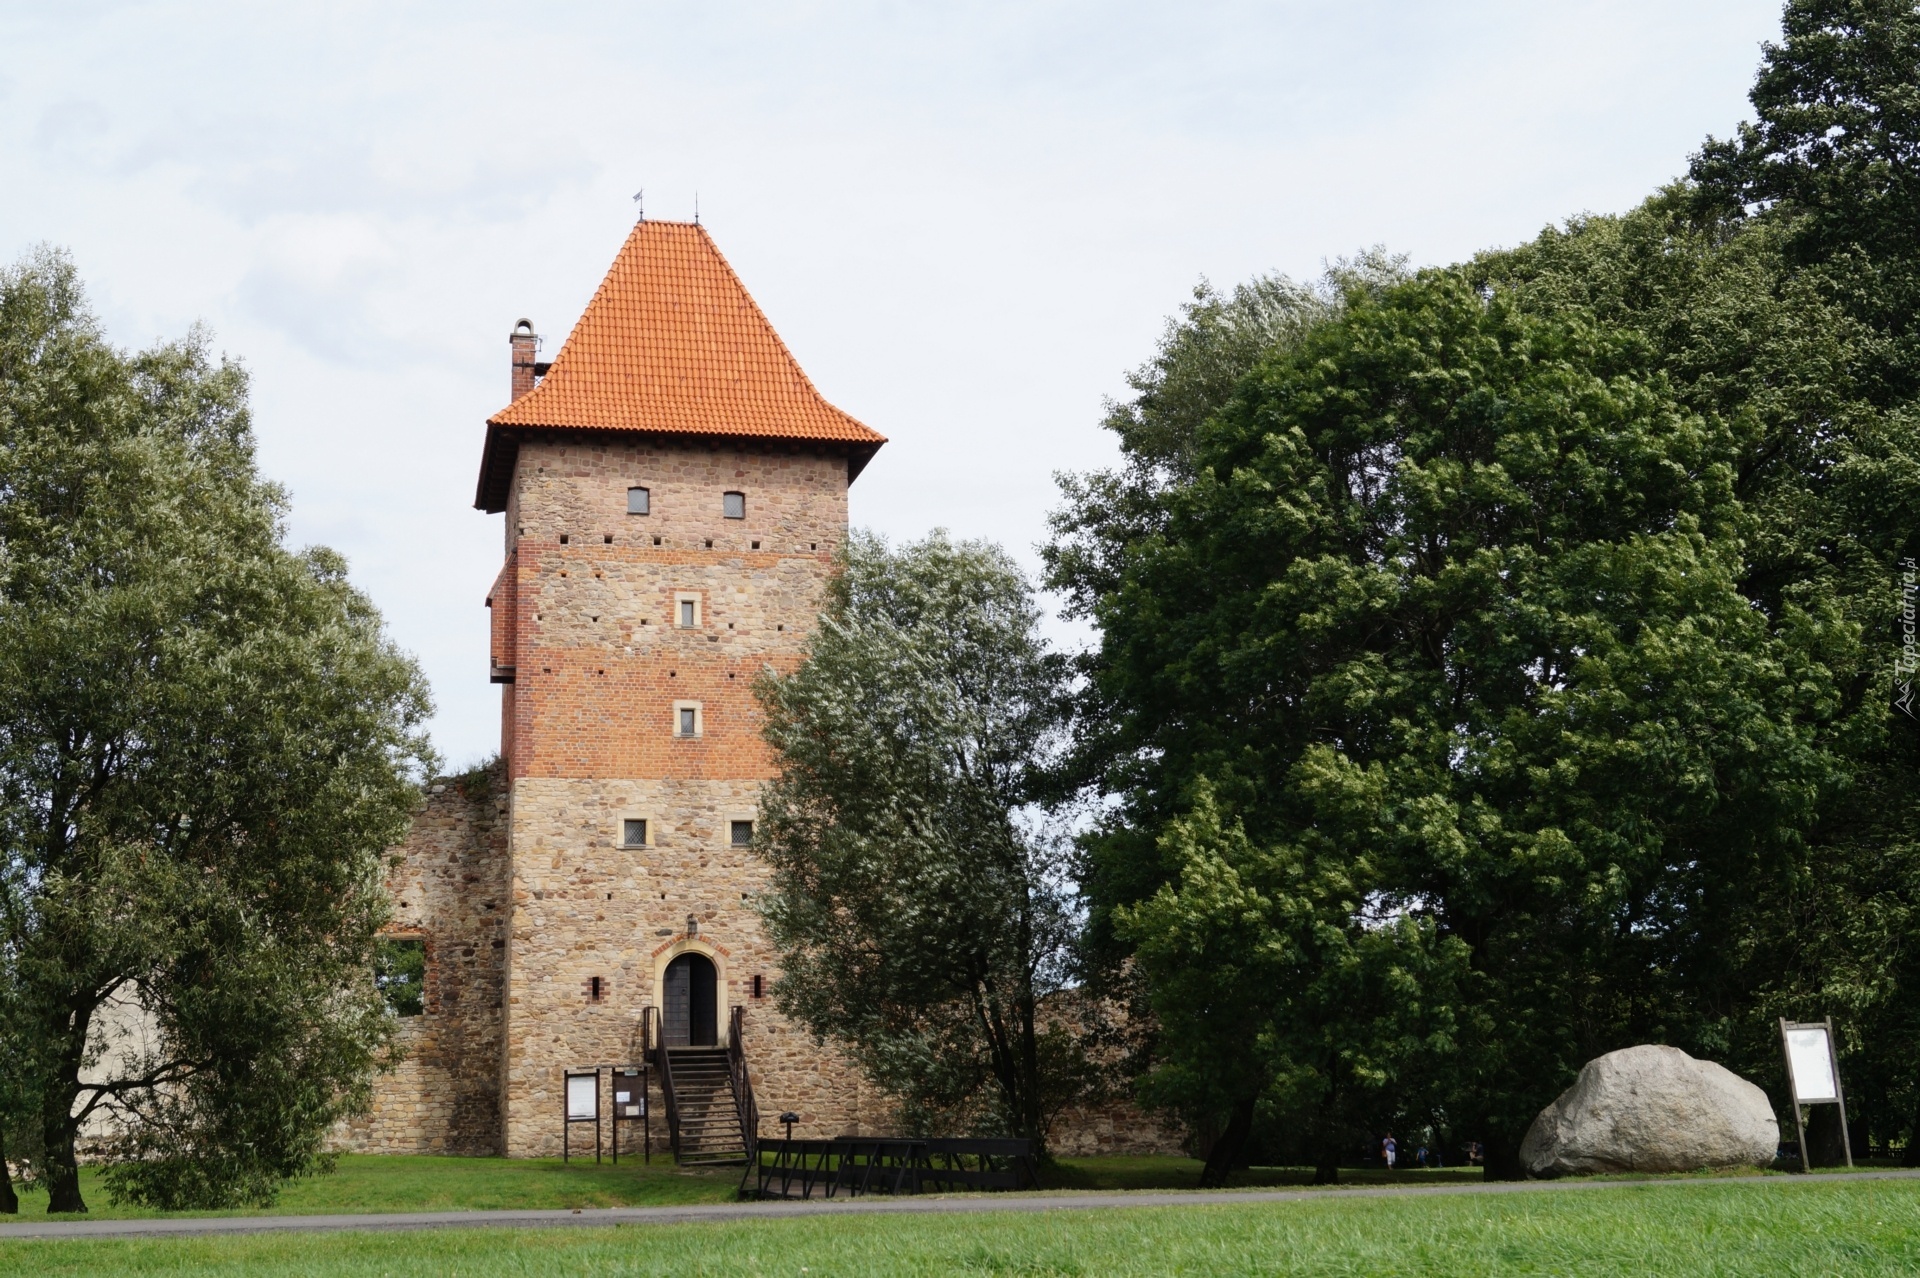 Zamek Chudów, Zamek w Chudowie, Polska, Ruiny